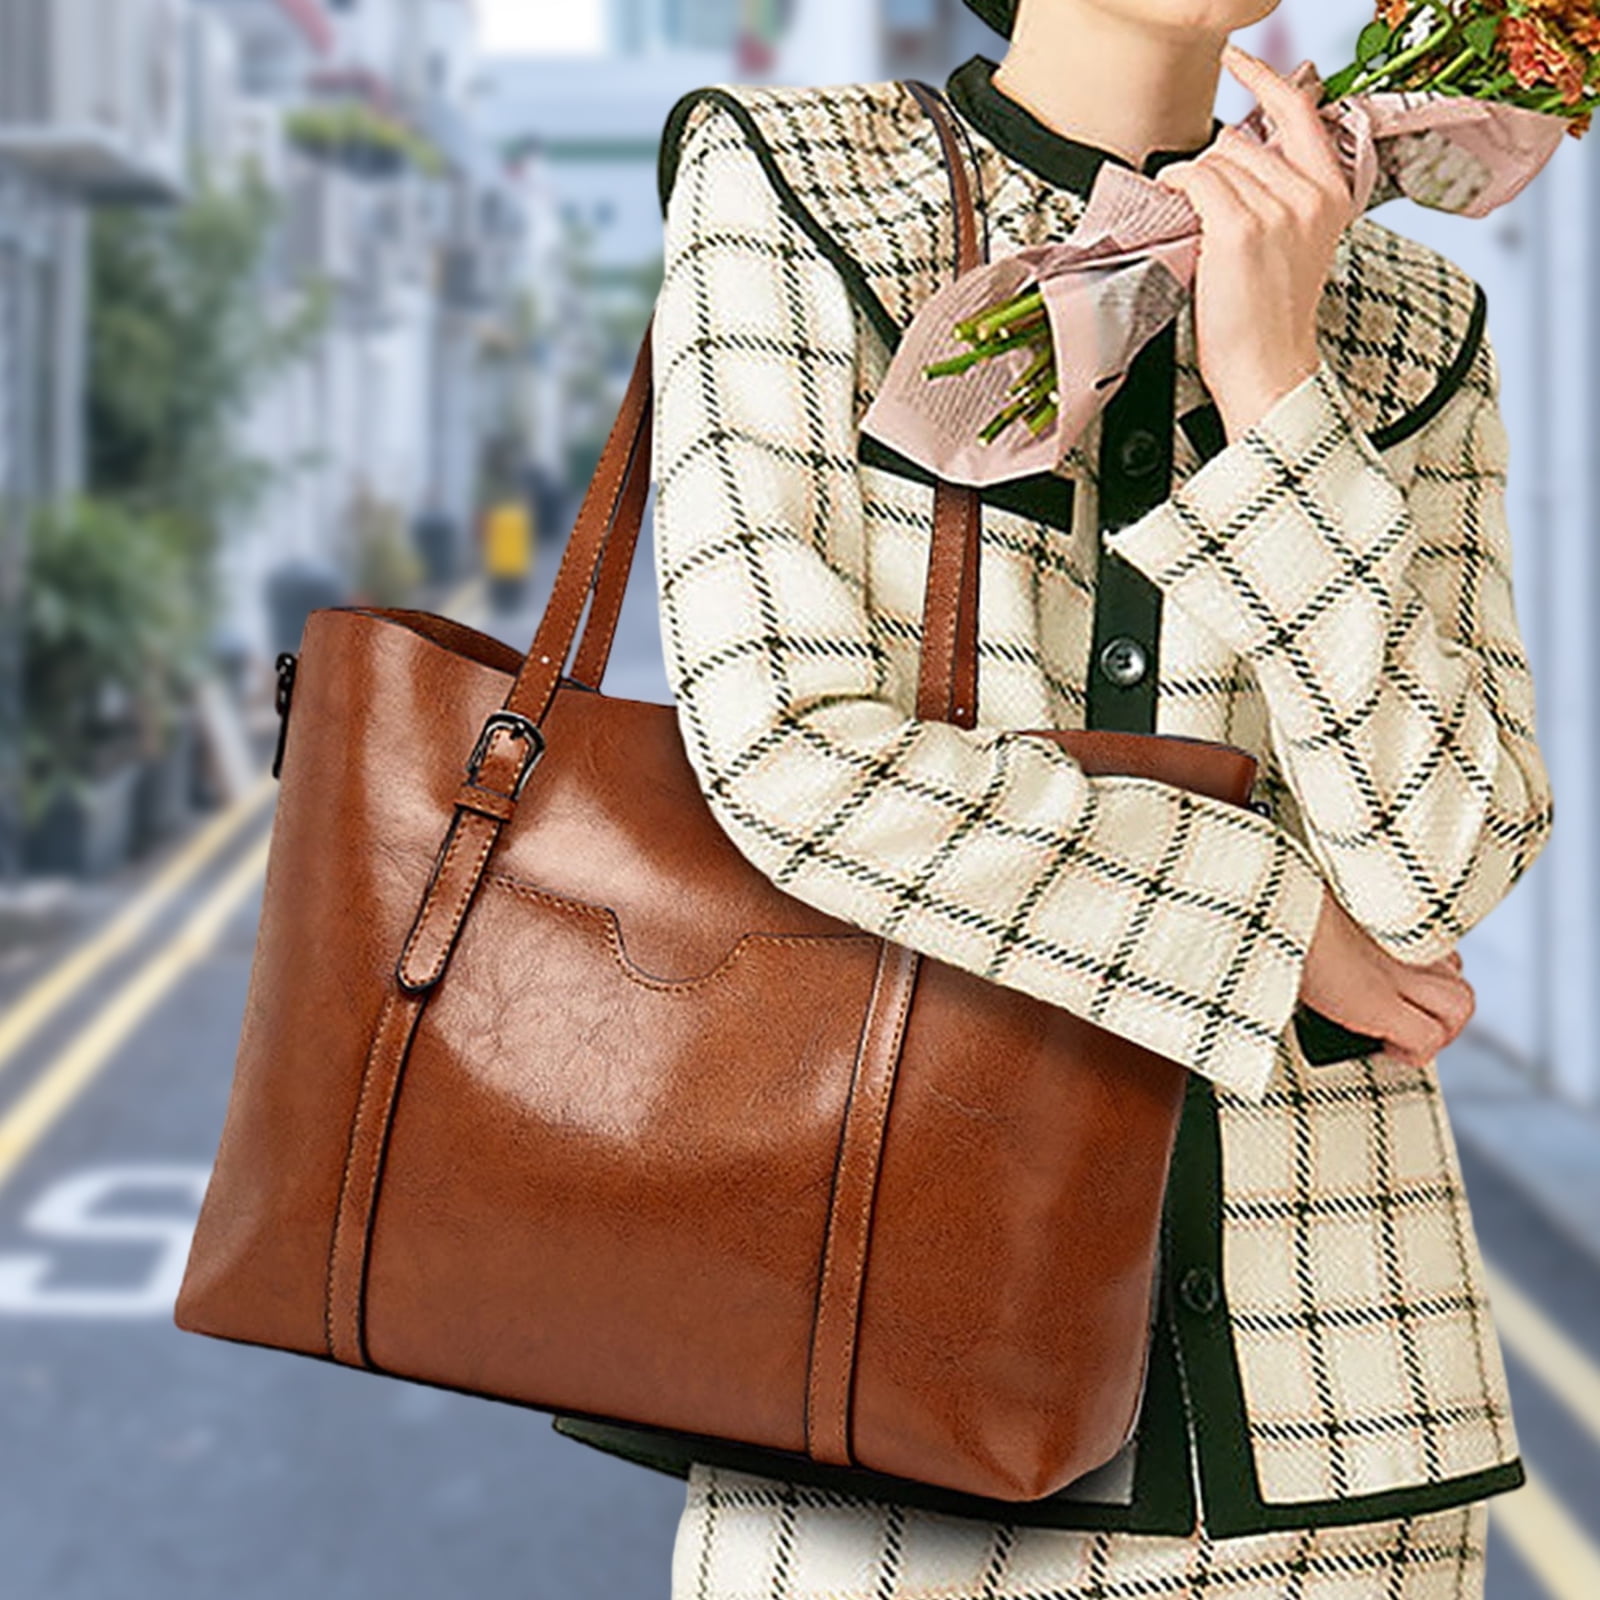 Buy gemsbook Women Brown Handbag Brown Online @ Best Price in India |  Flipkart.com